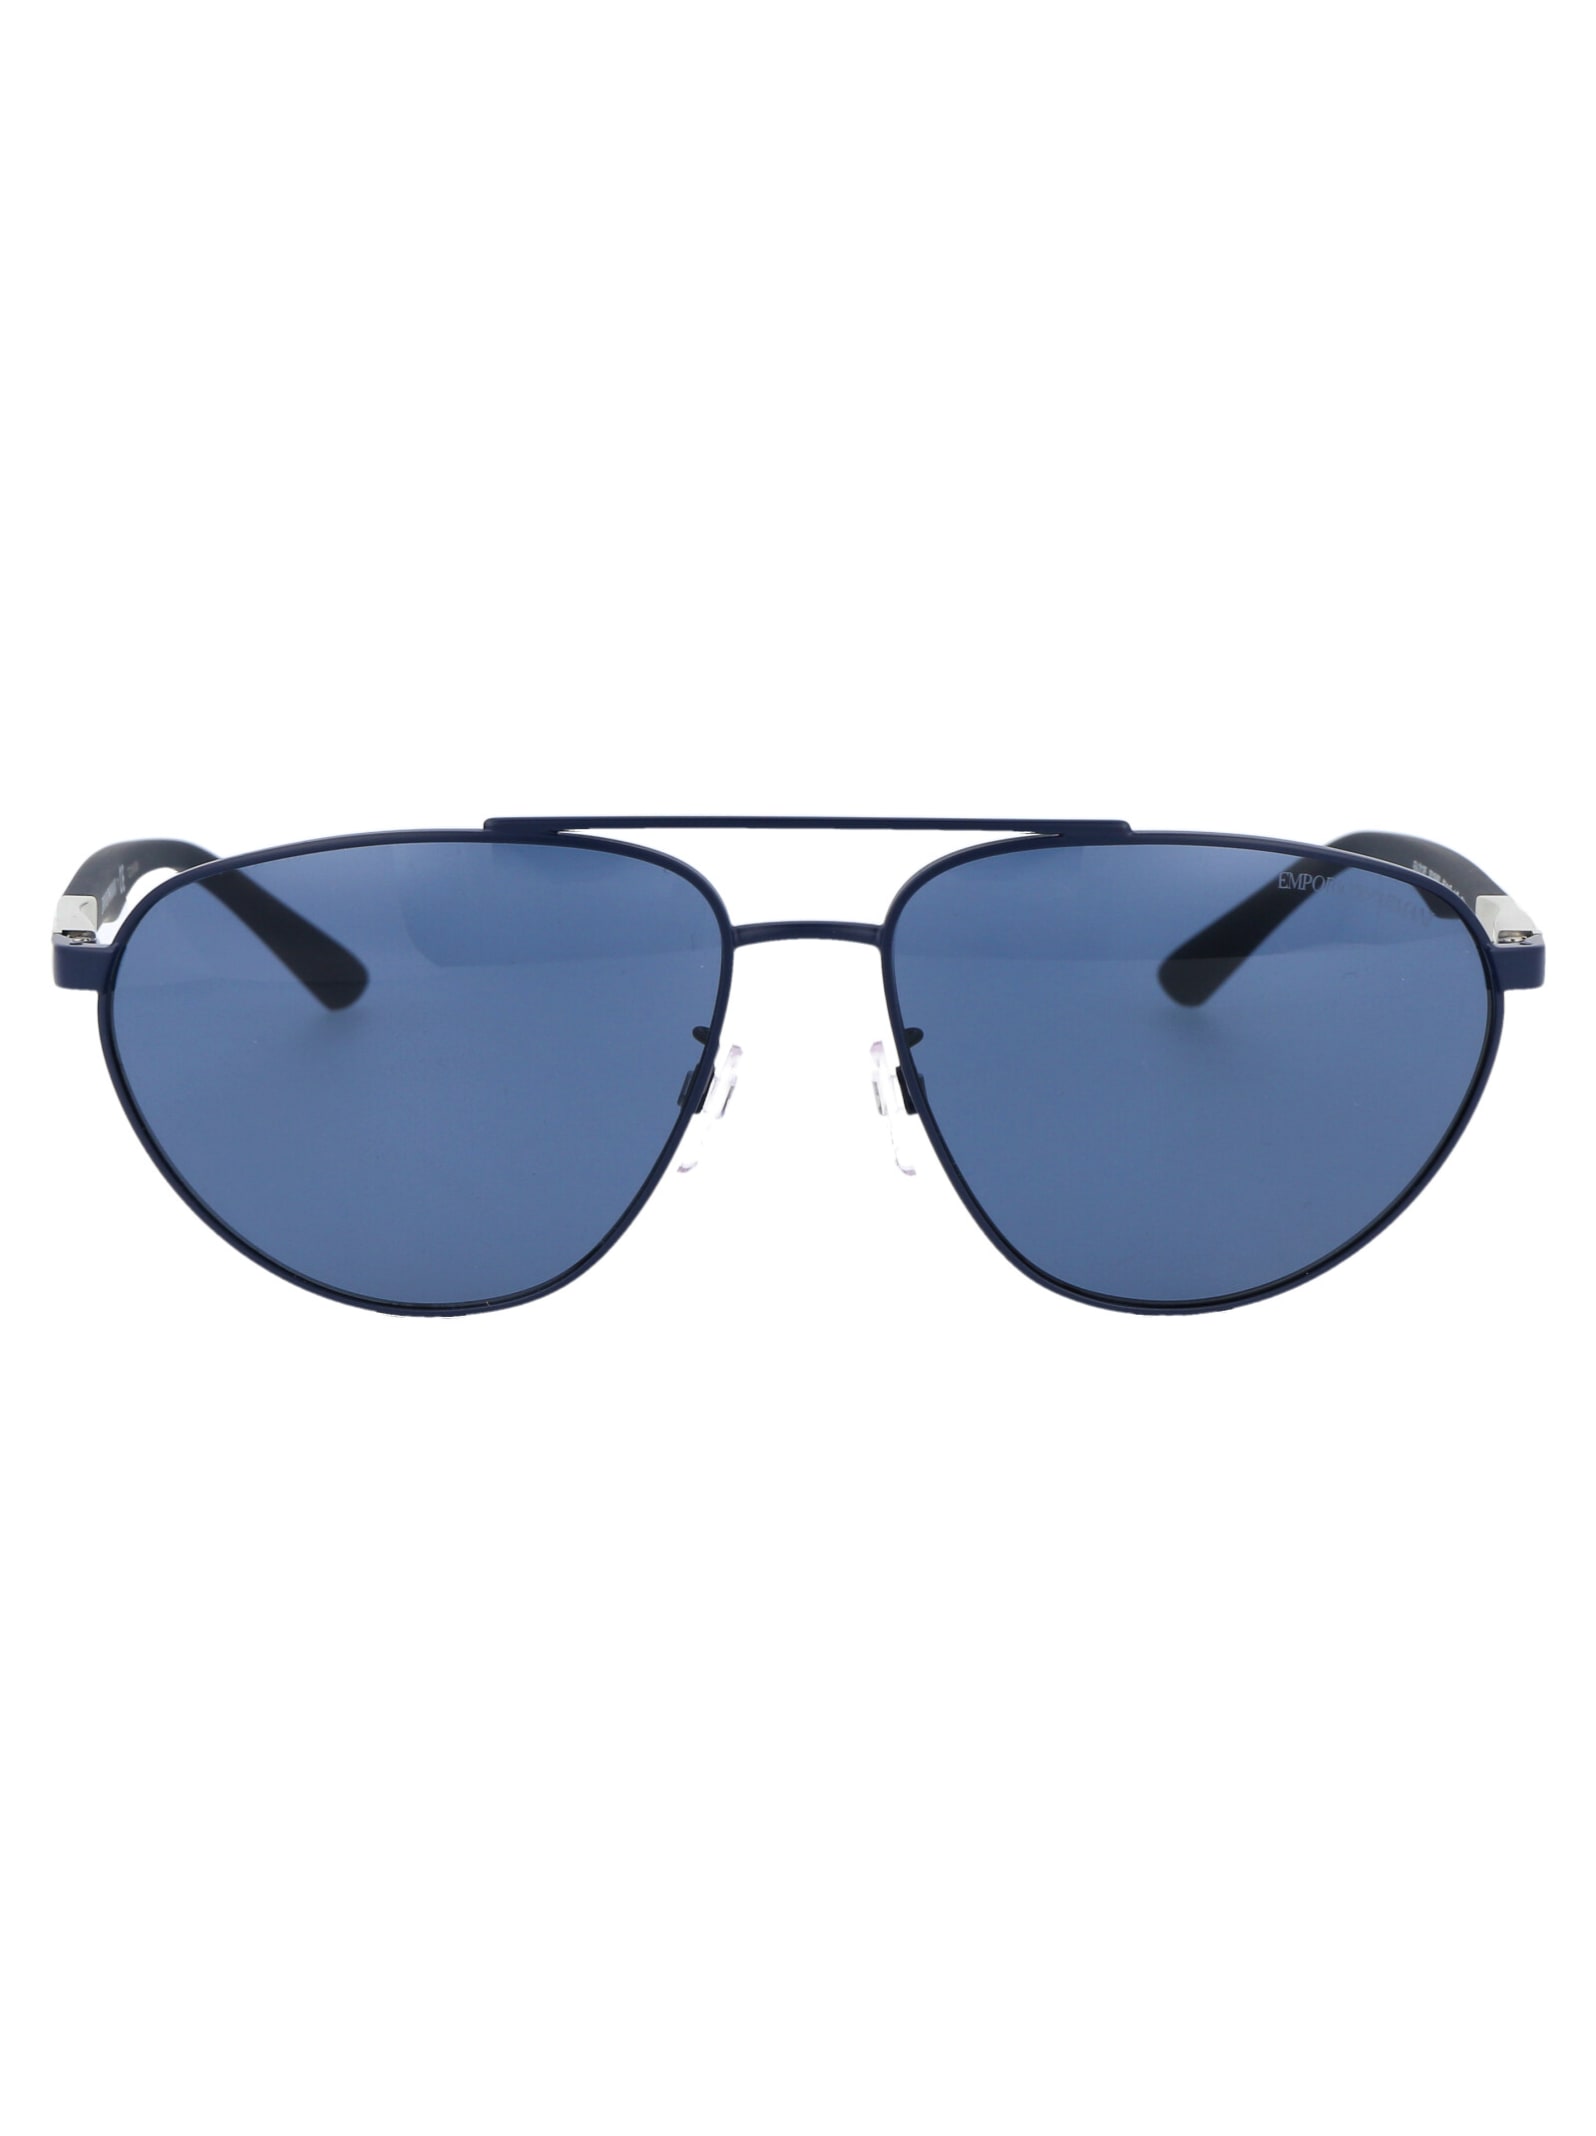 Emporio Armani 0ea2125 Sunglasses